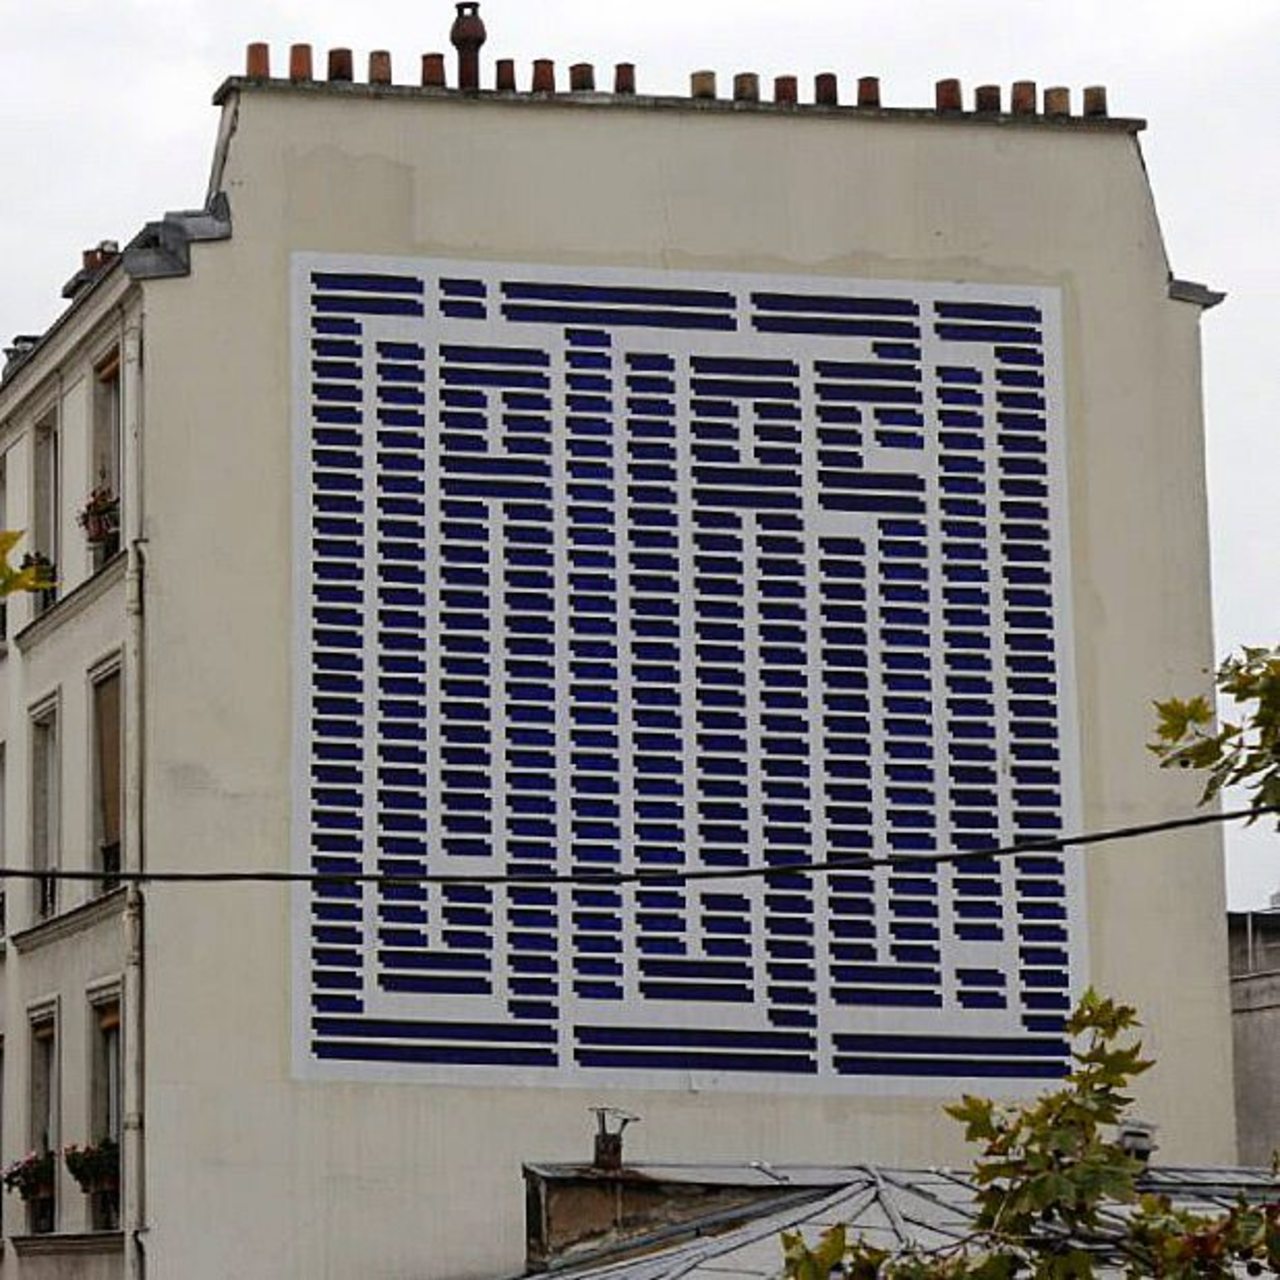 #Paris #graffiti photo by @jpoesse http://ift.tt/1KuYB7Z #StreetArt https://t.co/3KJX6EA5wd